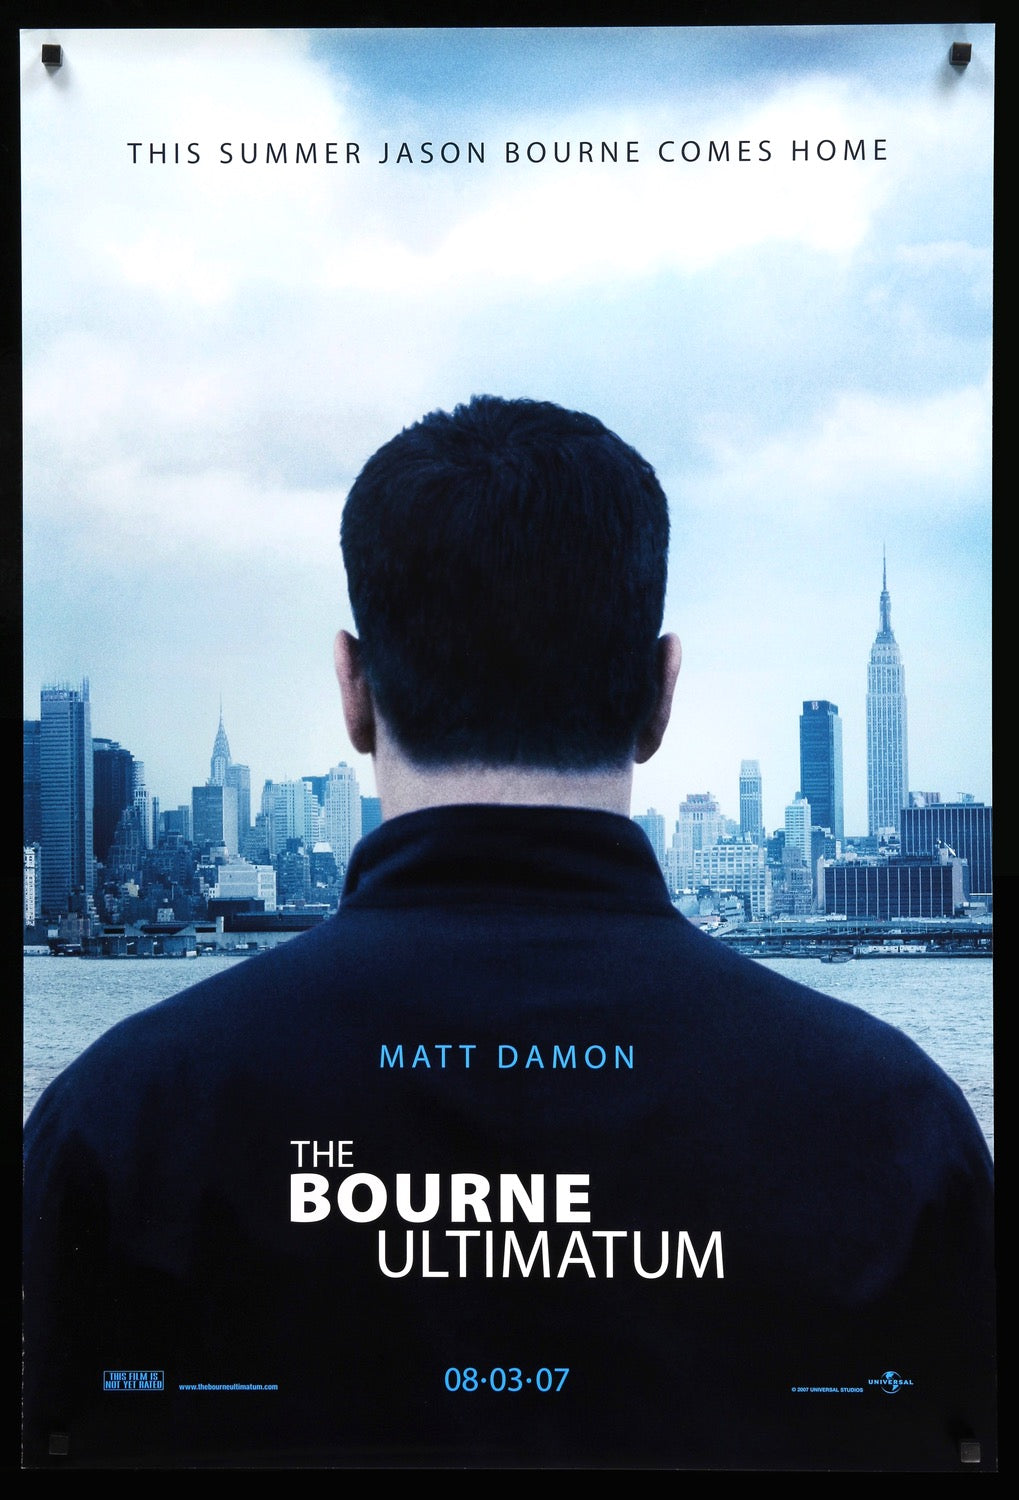 Bourne Ultimatum (2007) original movie poster for sale at Original Film Art